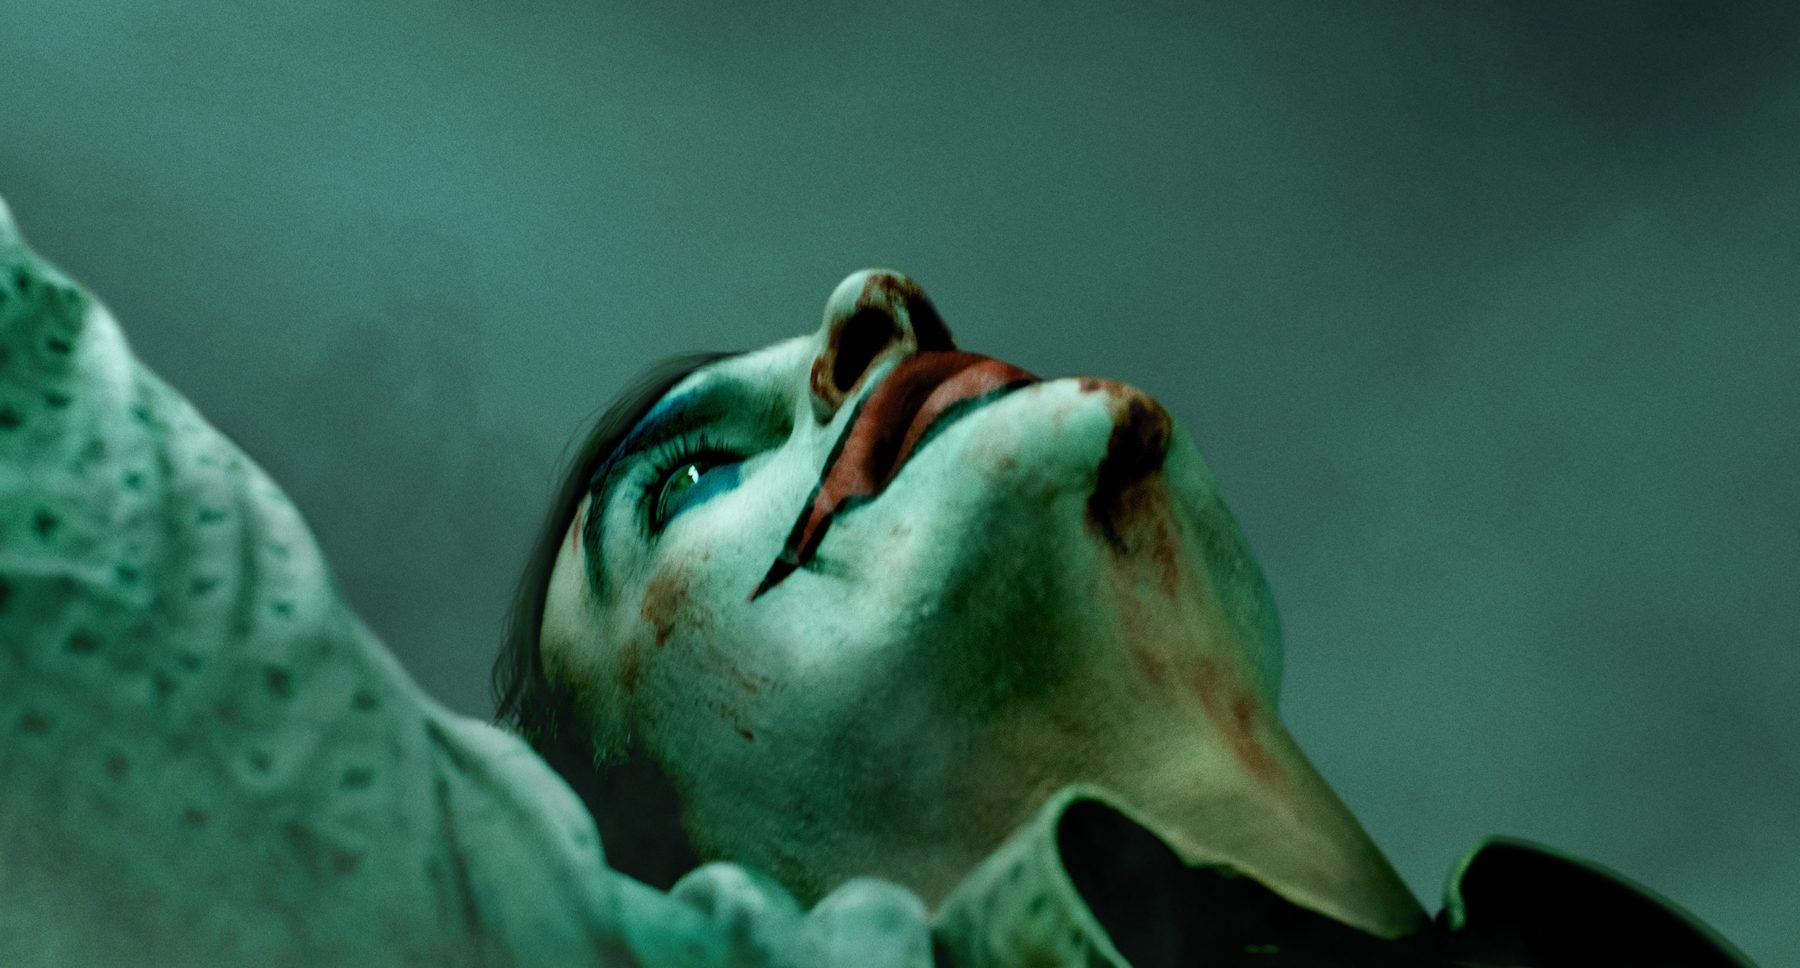 Obtenga una nueva mirada al Joker de Joaquin Phoenix en la portada de una revista italiana